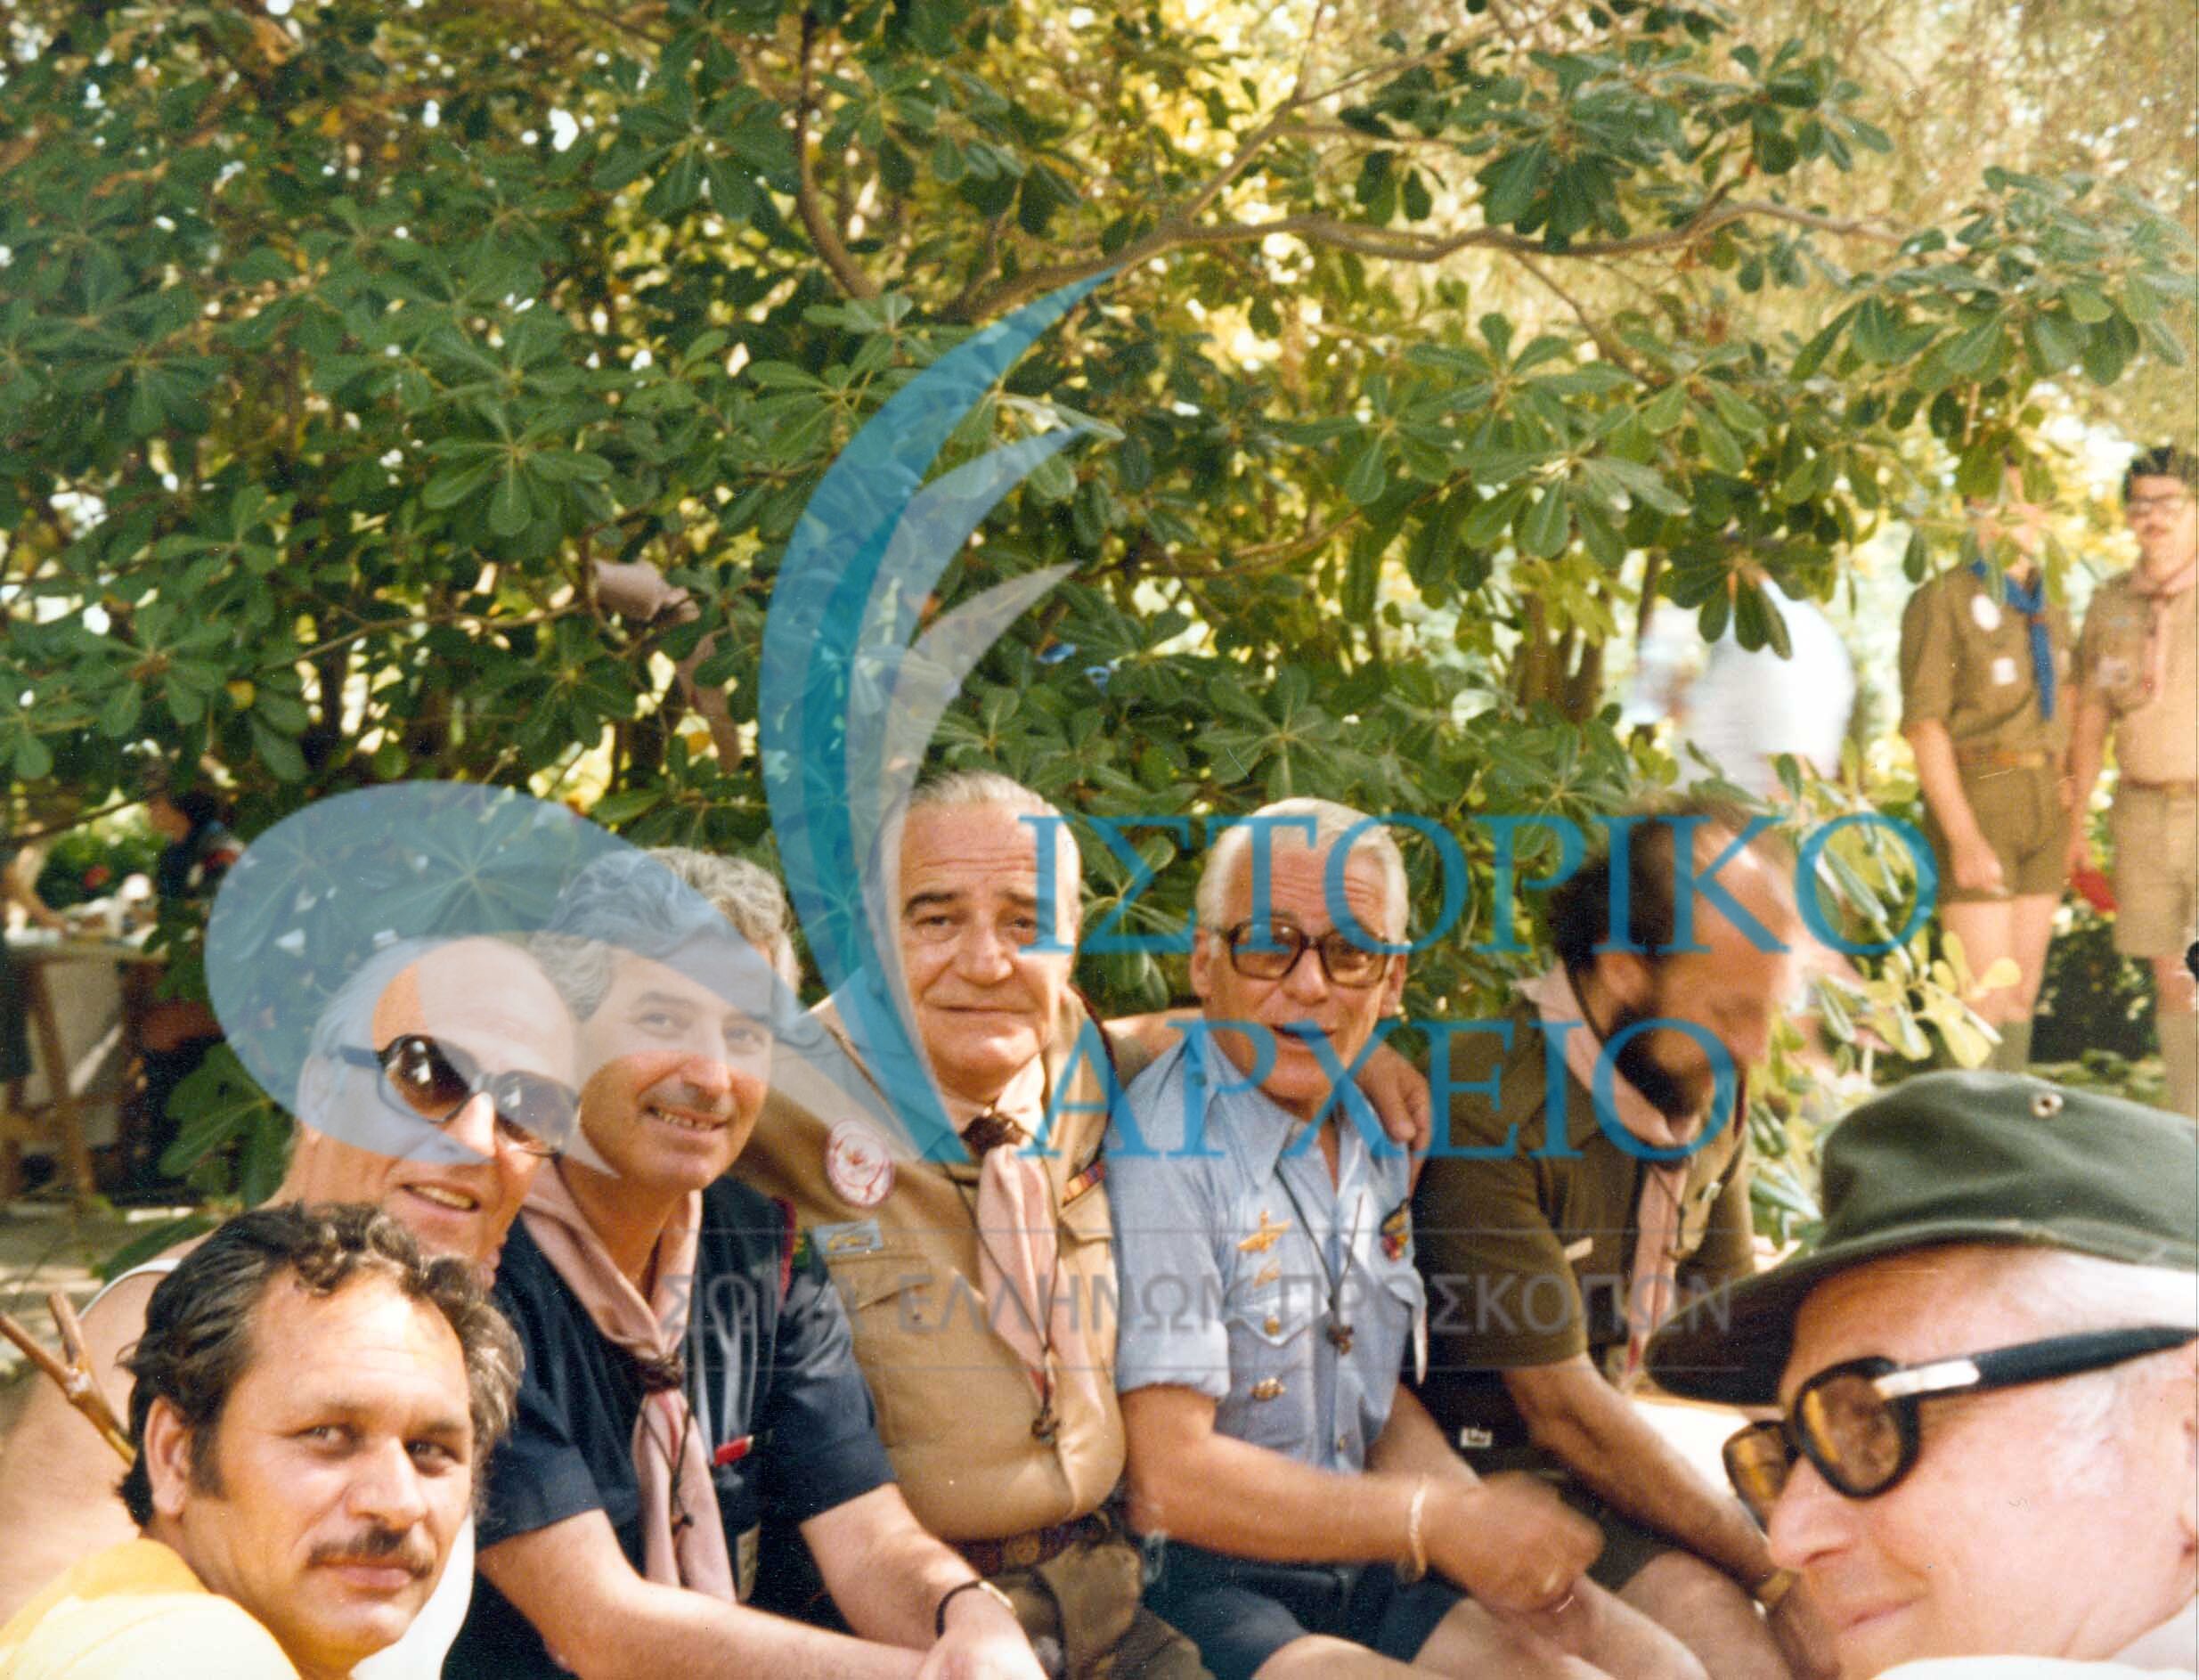 Από την ετήσια Συνάντηση Πτυχιούχων Διακριτικού Δάσους στο Βίδο Κέρκυρας το 1981. Από αριστερά Θ. Παπανικολάου, Κ. Σικ, Κ. Παπαδόπουλος.